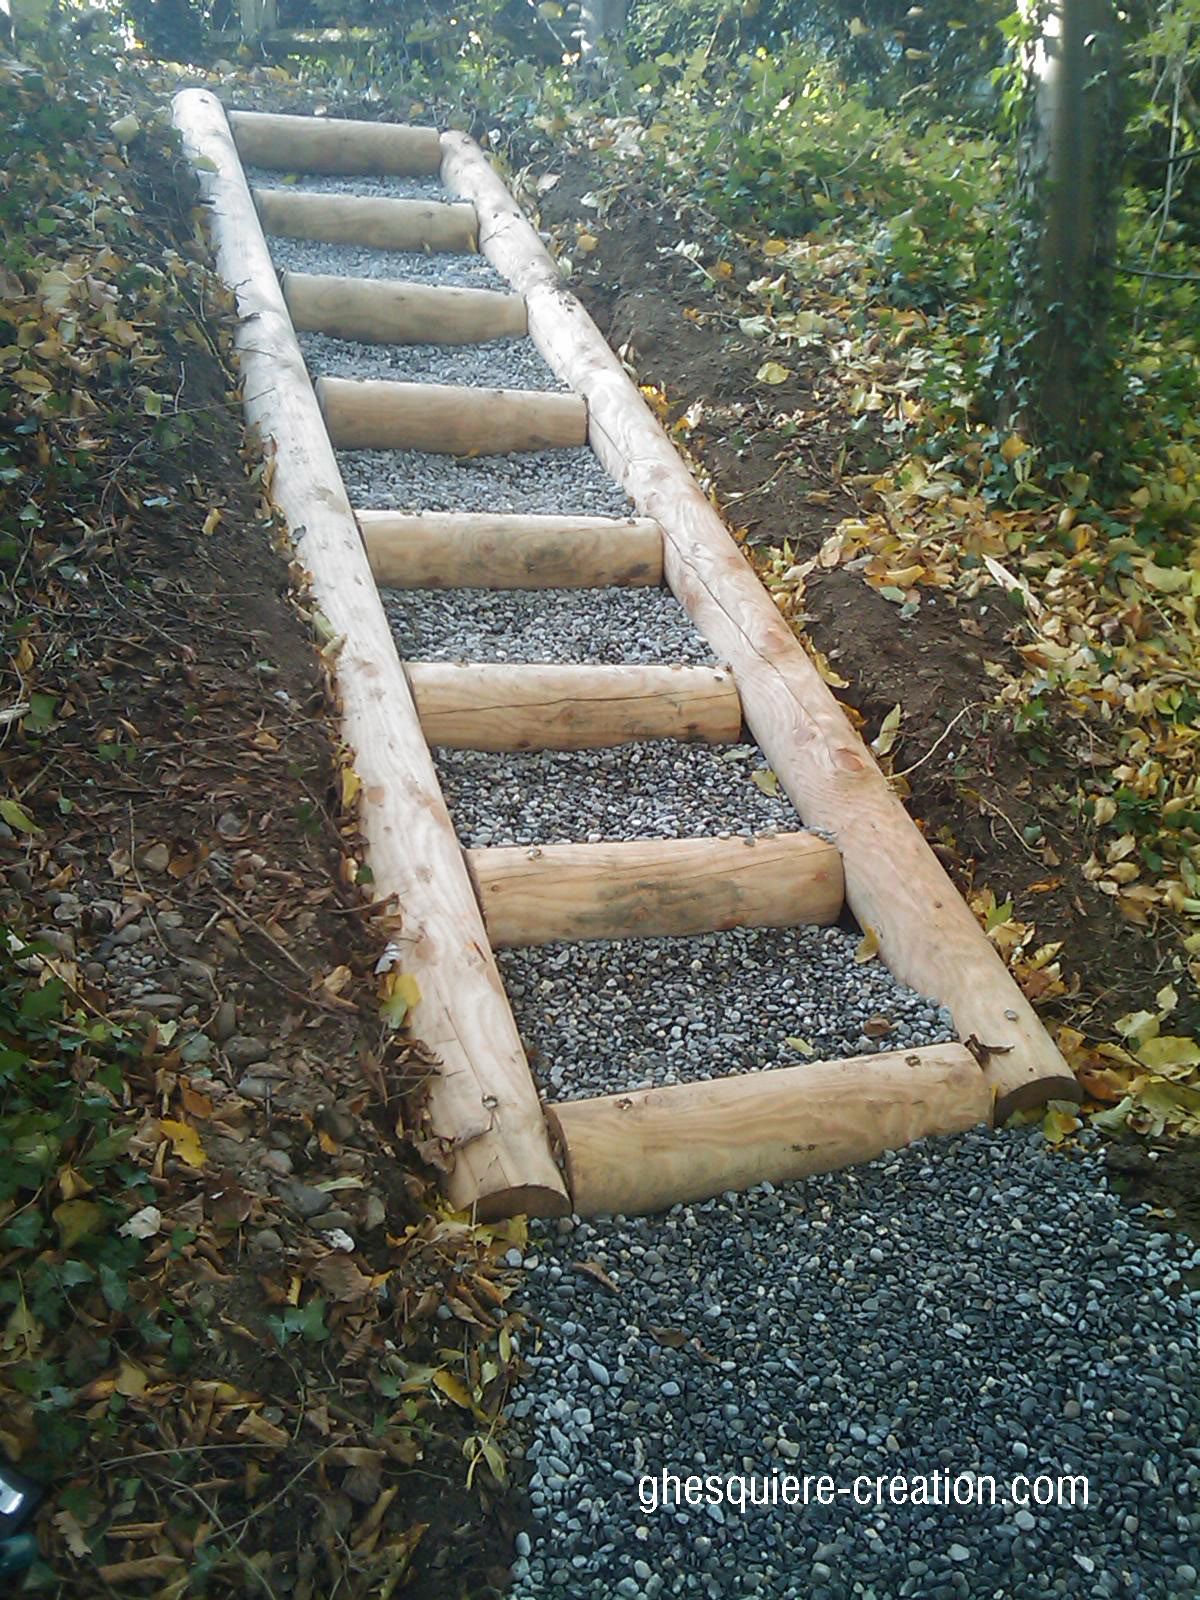 Grossiste Mobilier De Jardin Frais Création D Un Escalier En Bois Haute Savoie Par Un